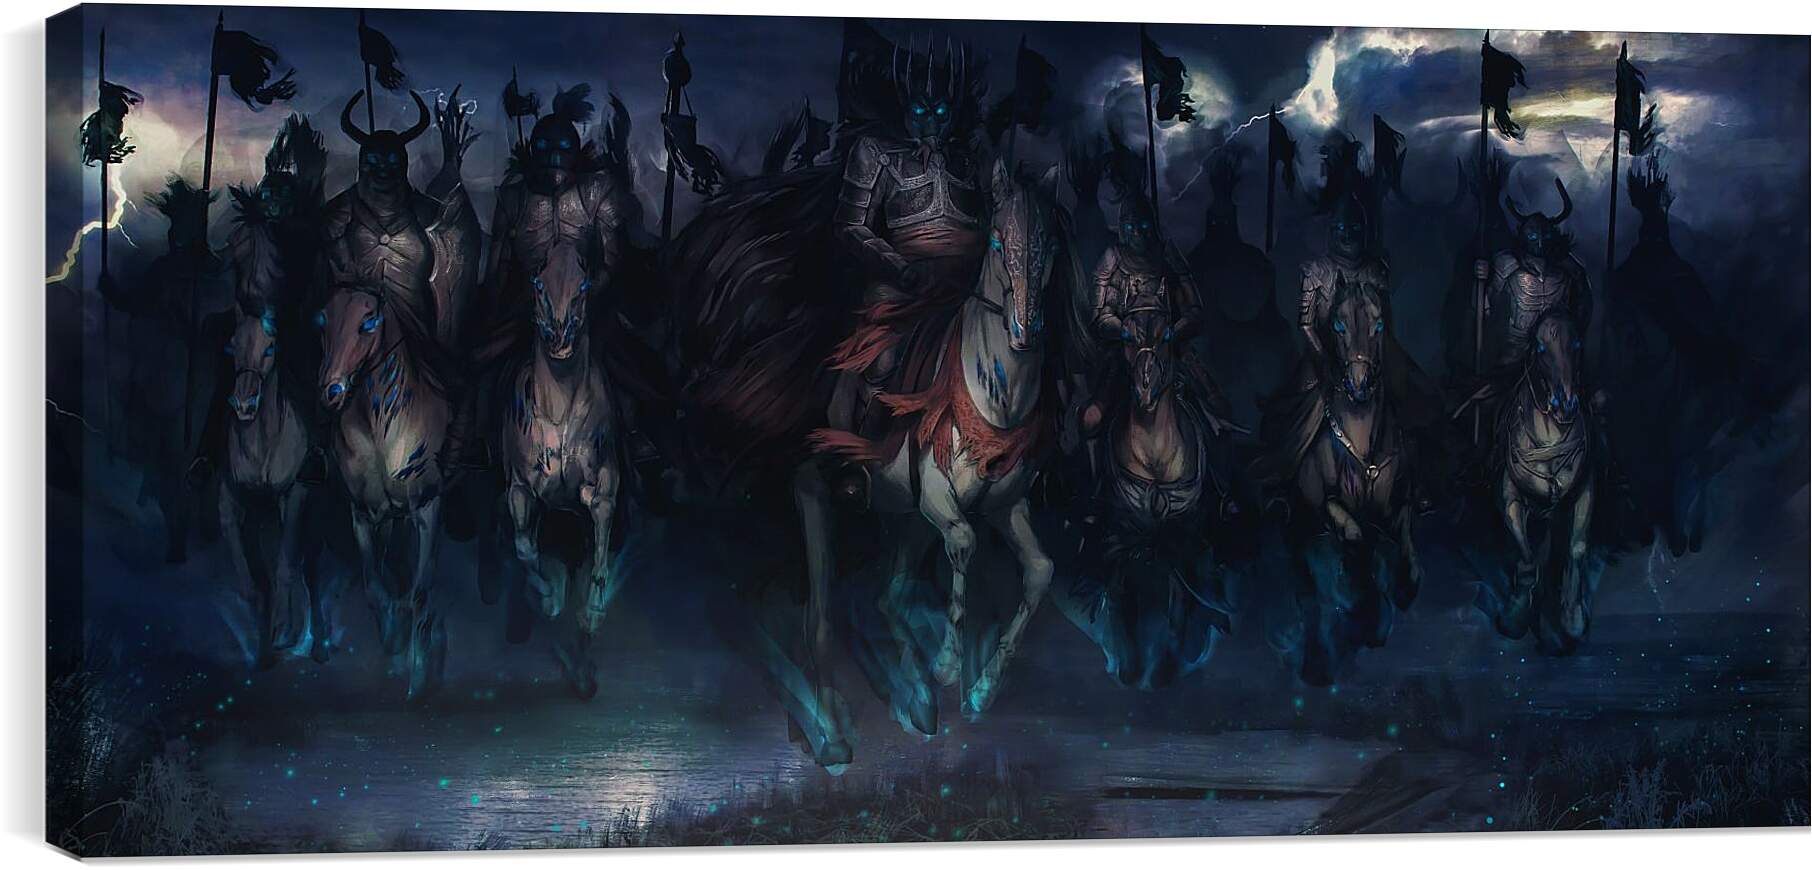 Постер и плакат - The Witcher (Ведьмак), Дикая охота в походе